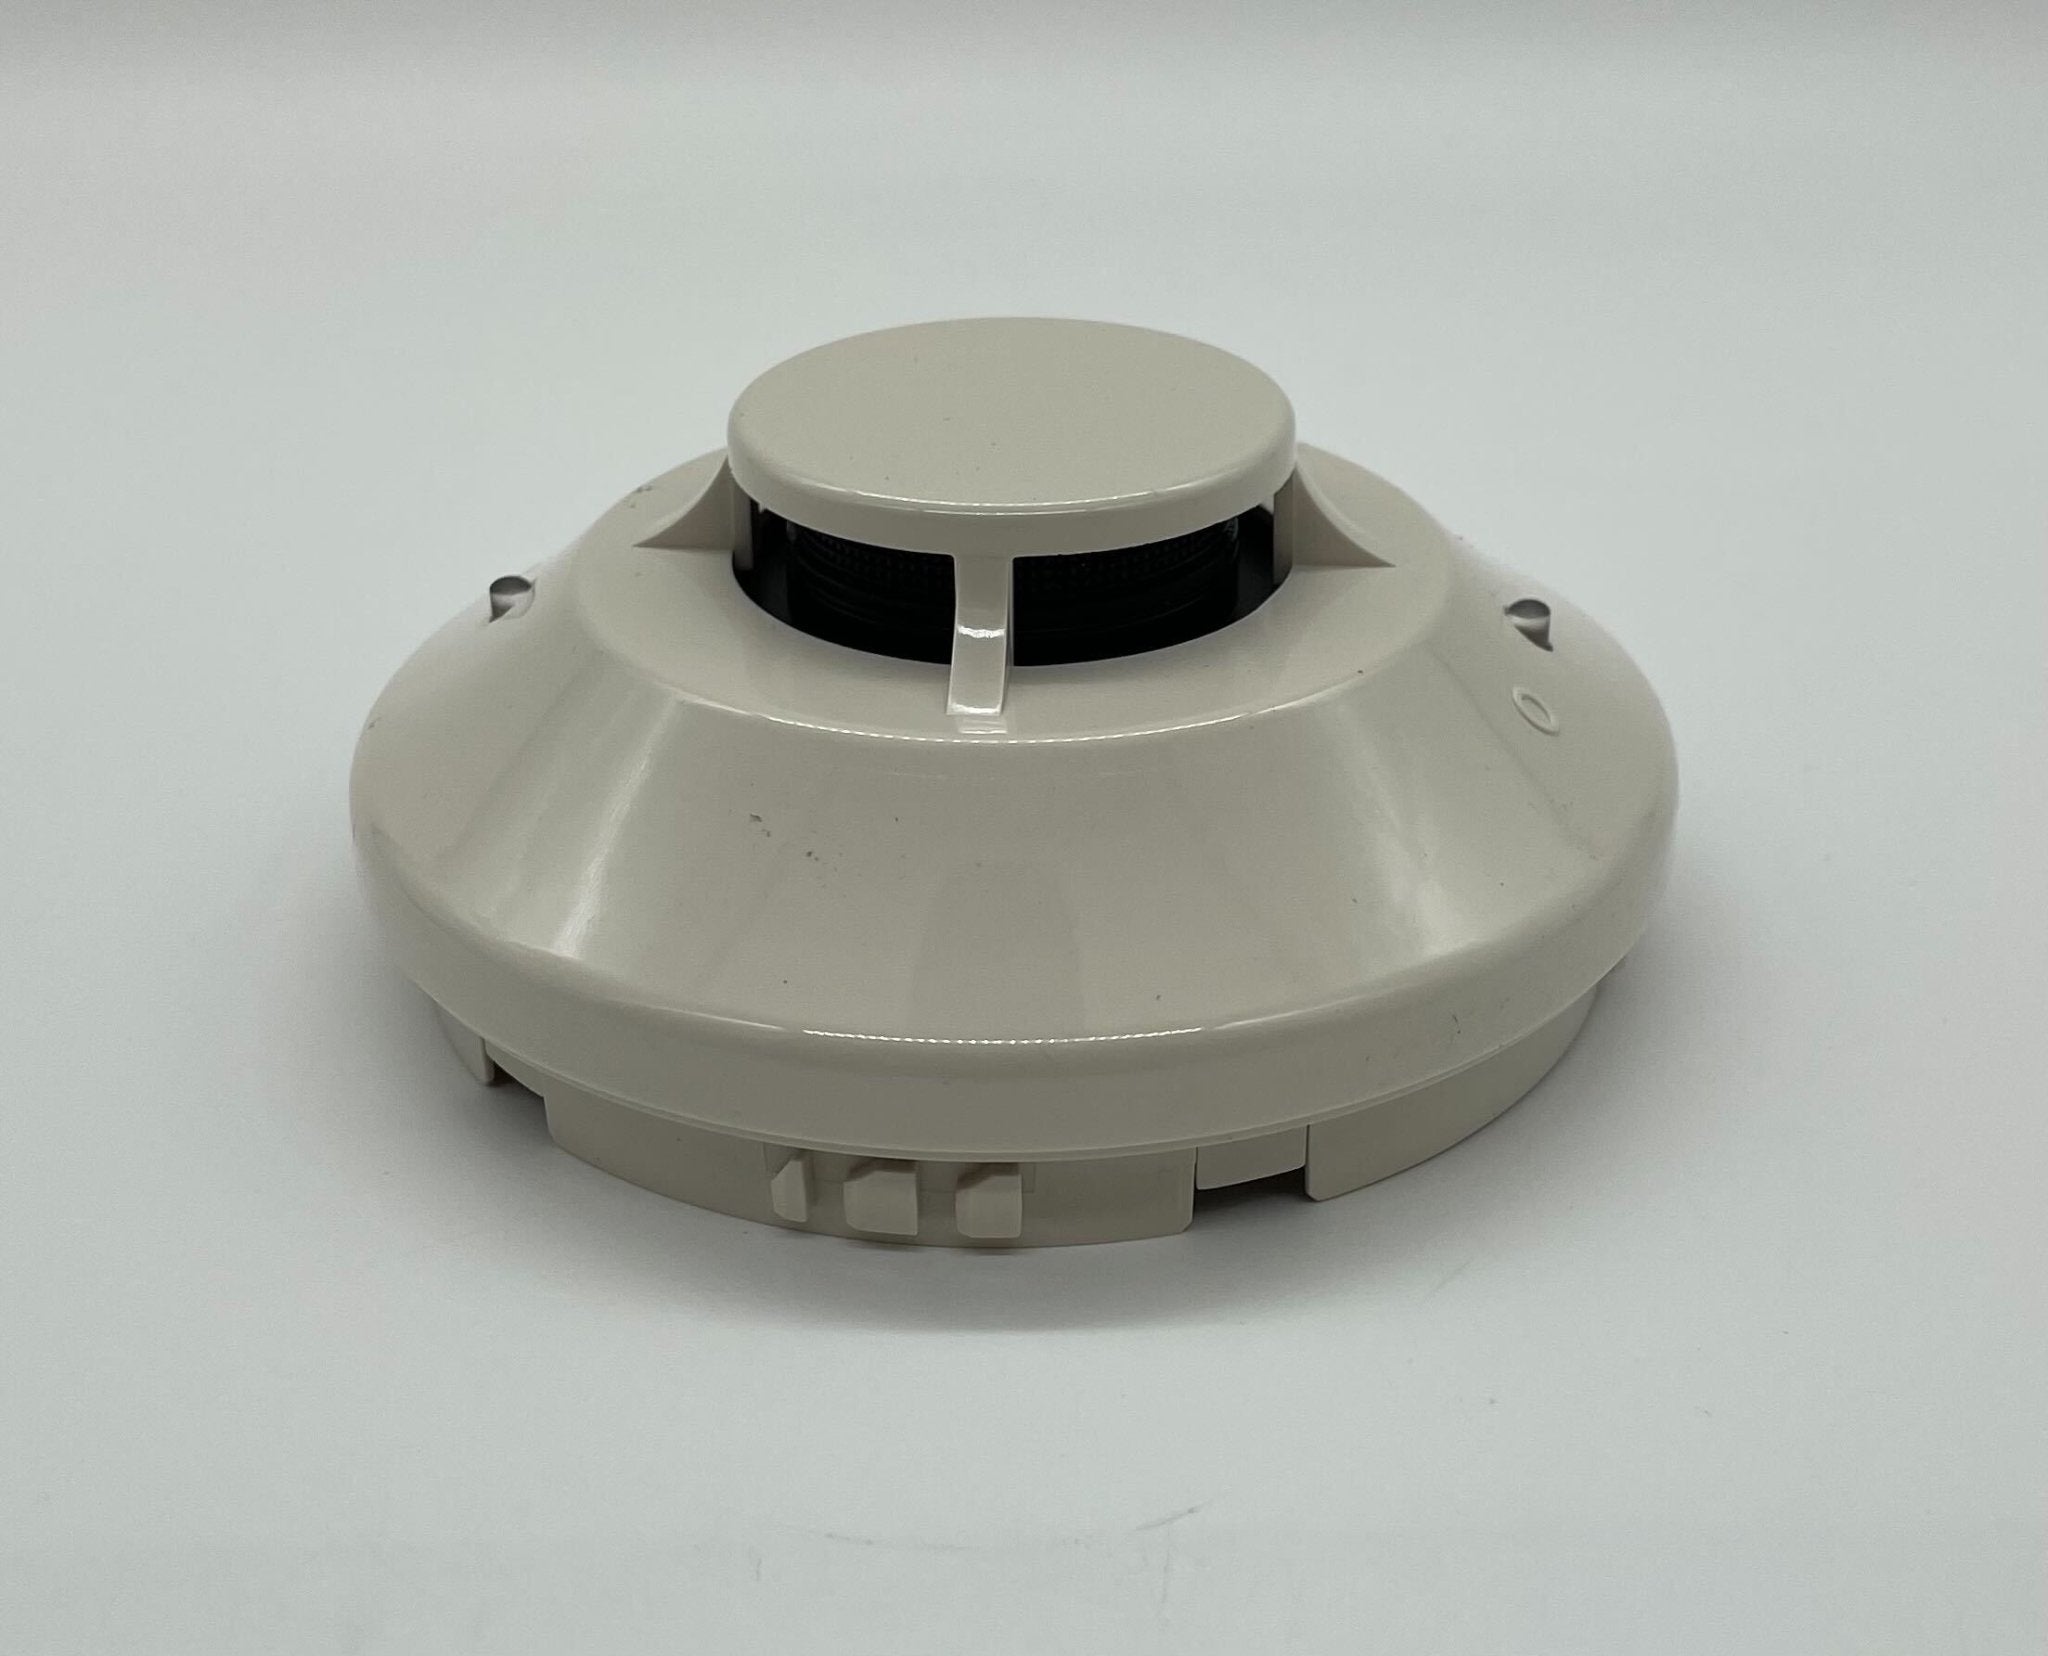 Secutron MRI-2251B - The Fire Alarm Supplier